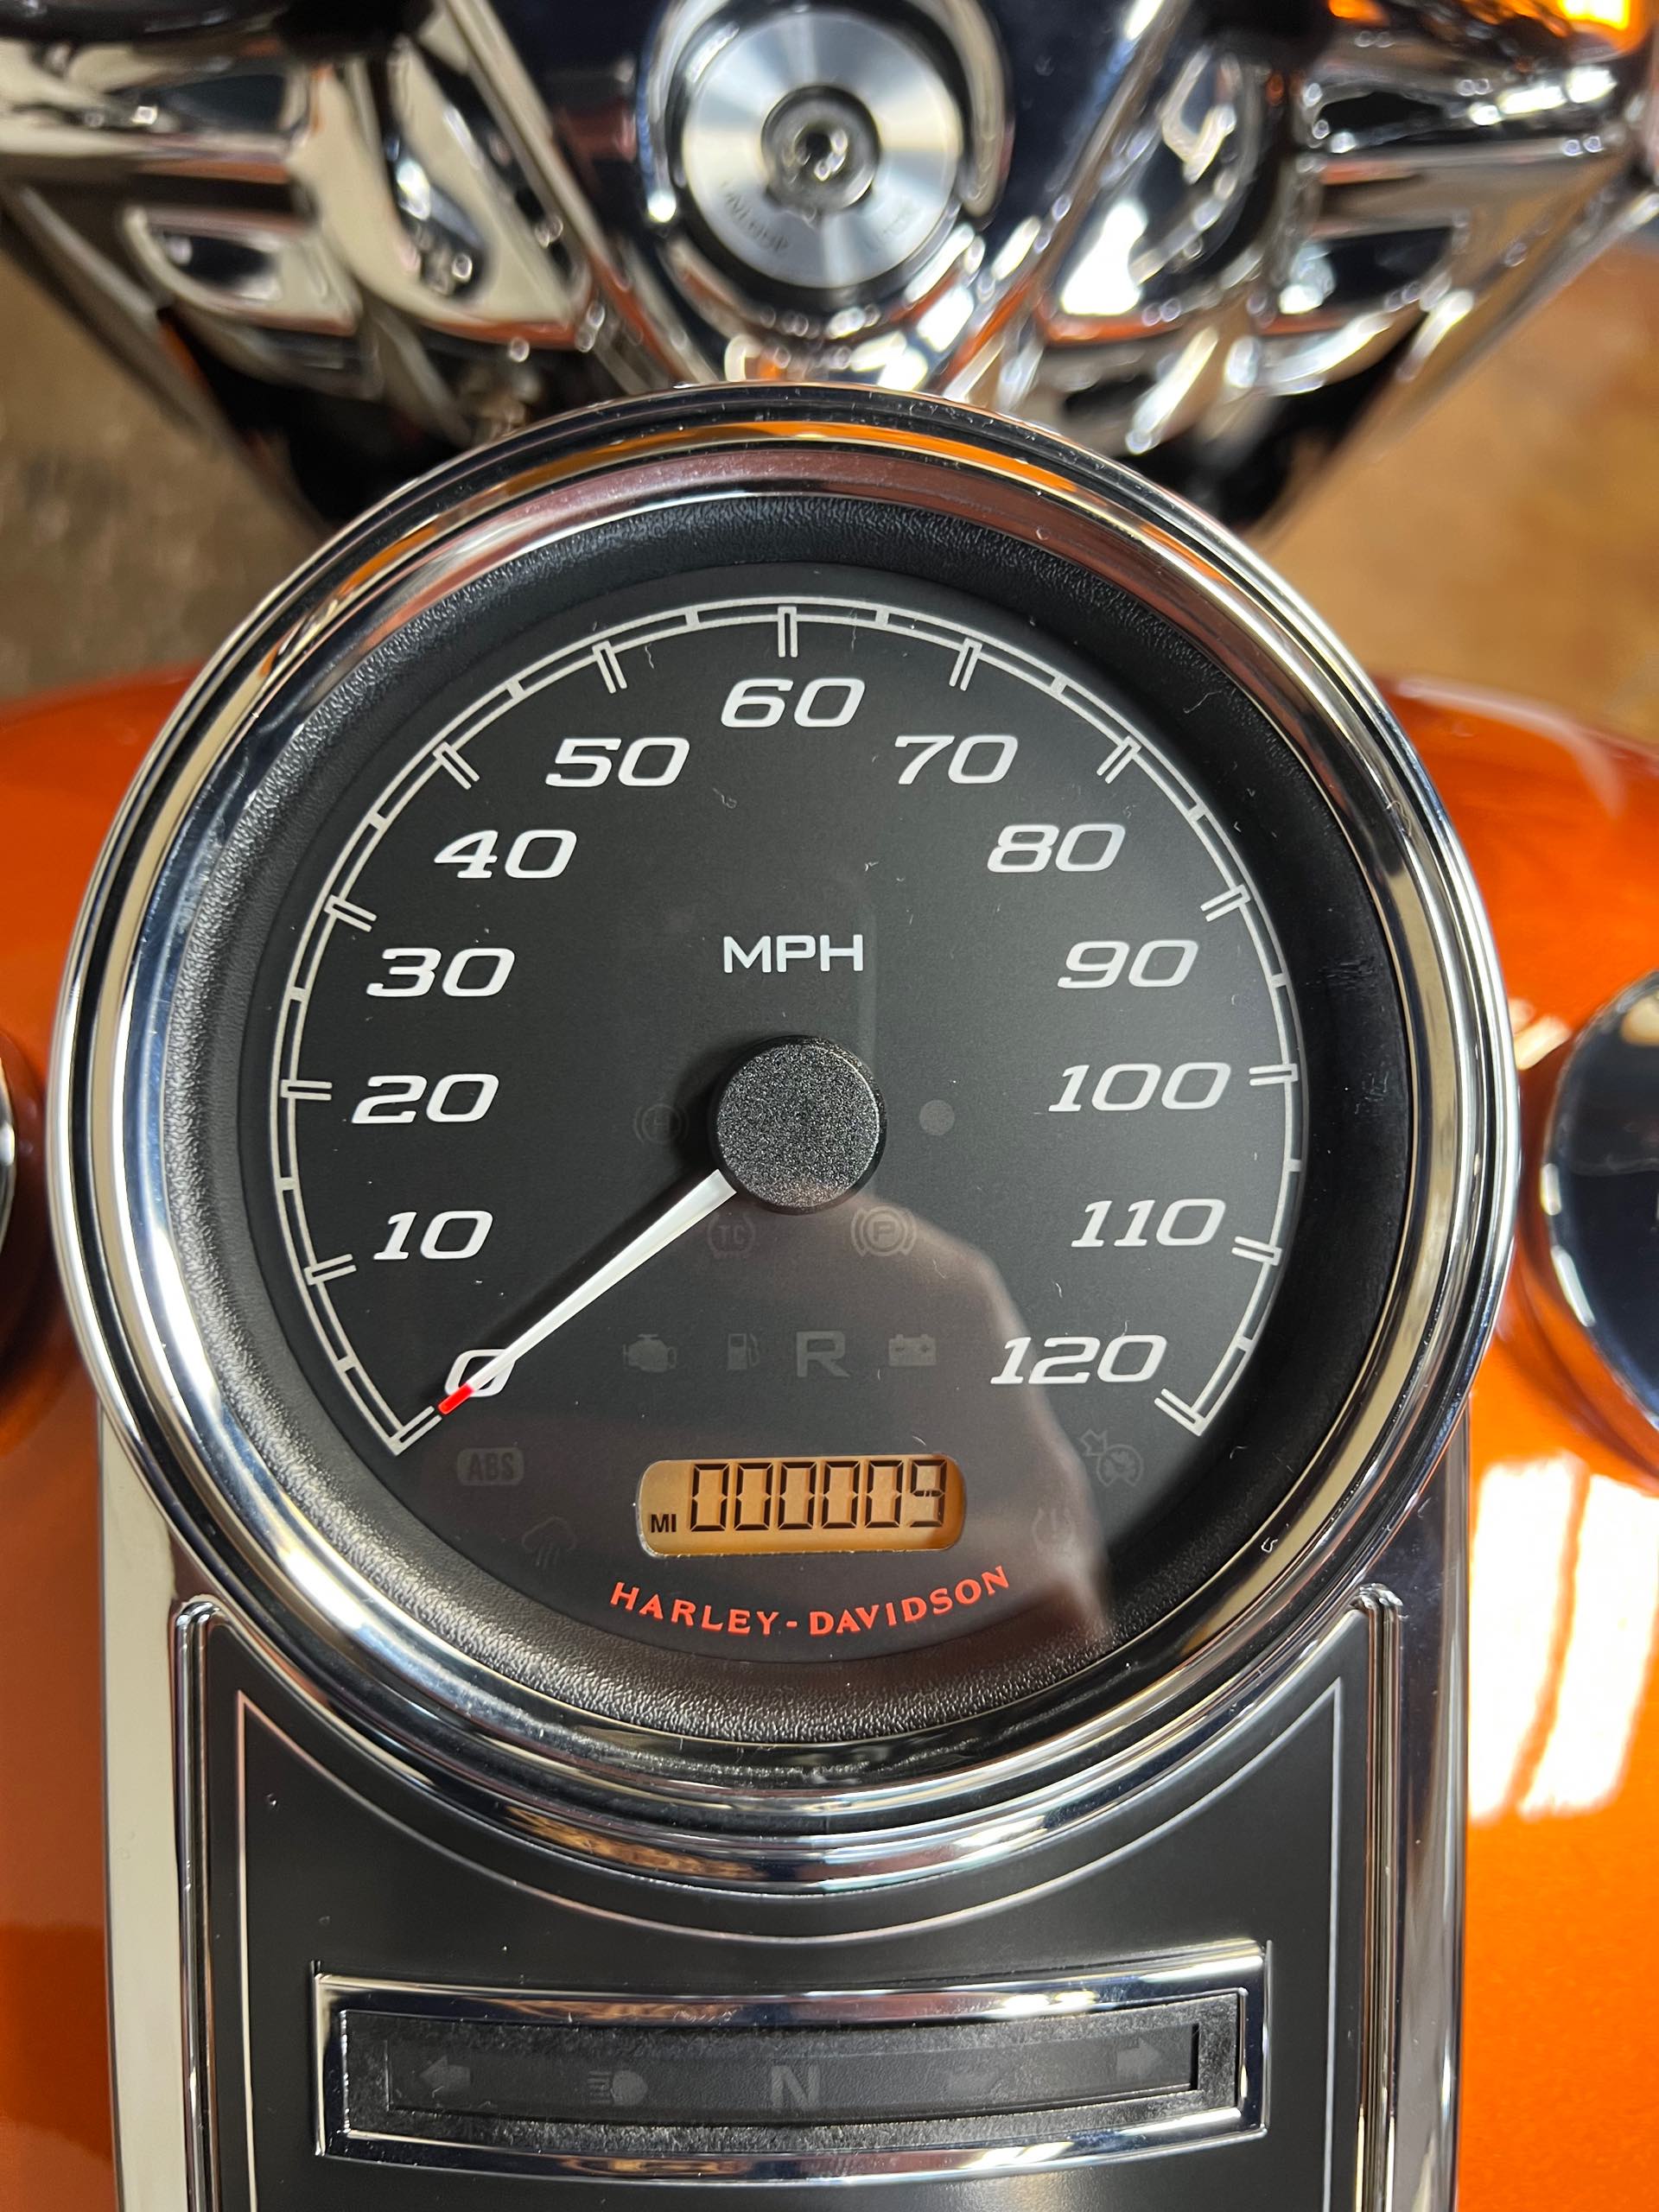 2023 Harley-Davidson Electra Glide Highway King at Southern Devil Harley-Davidson